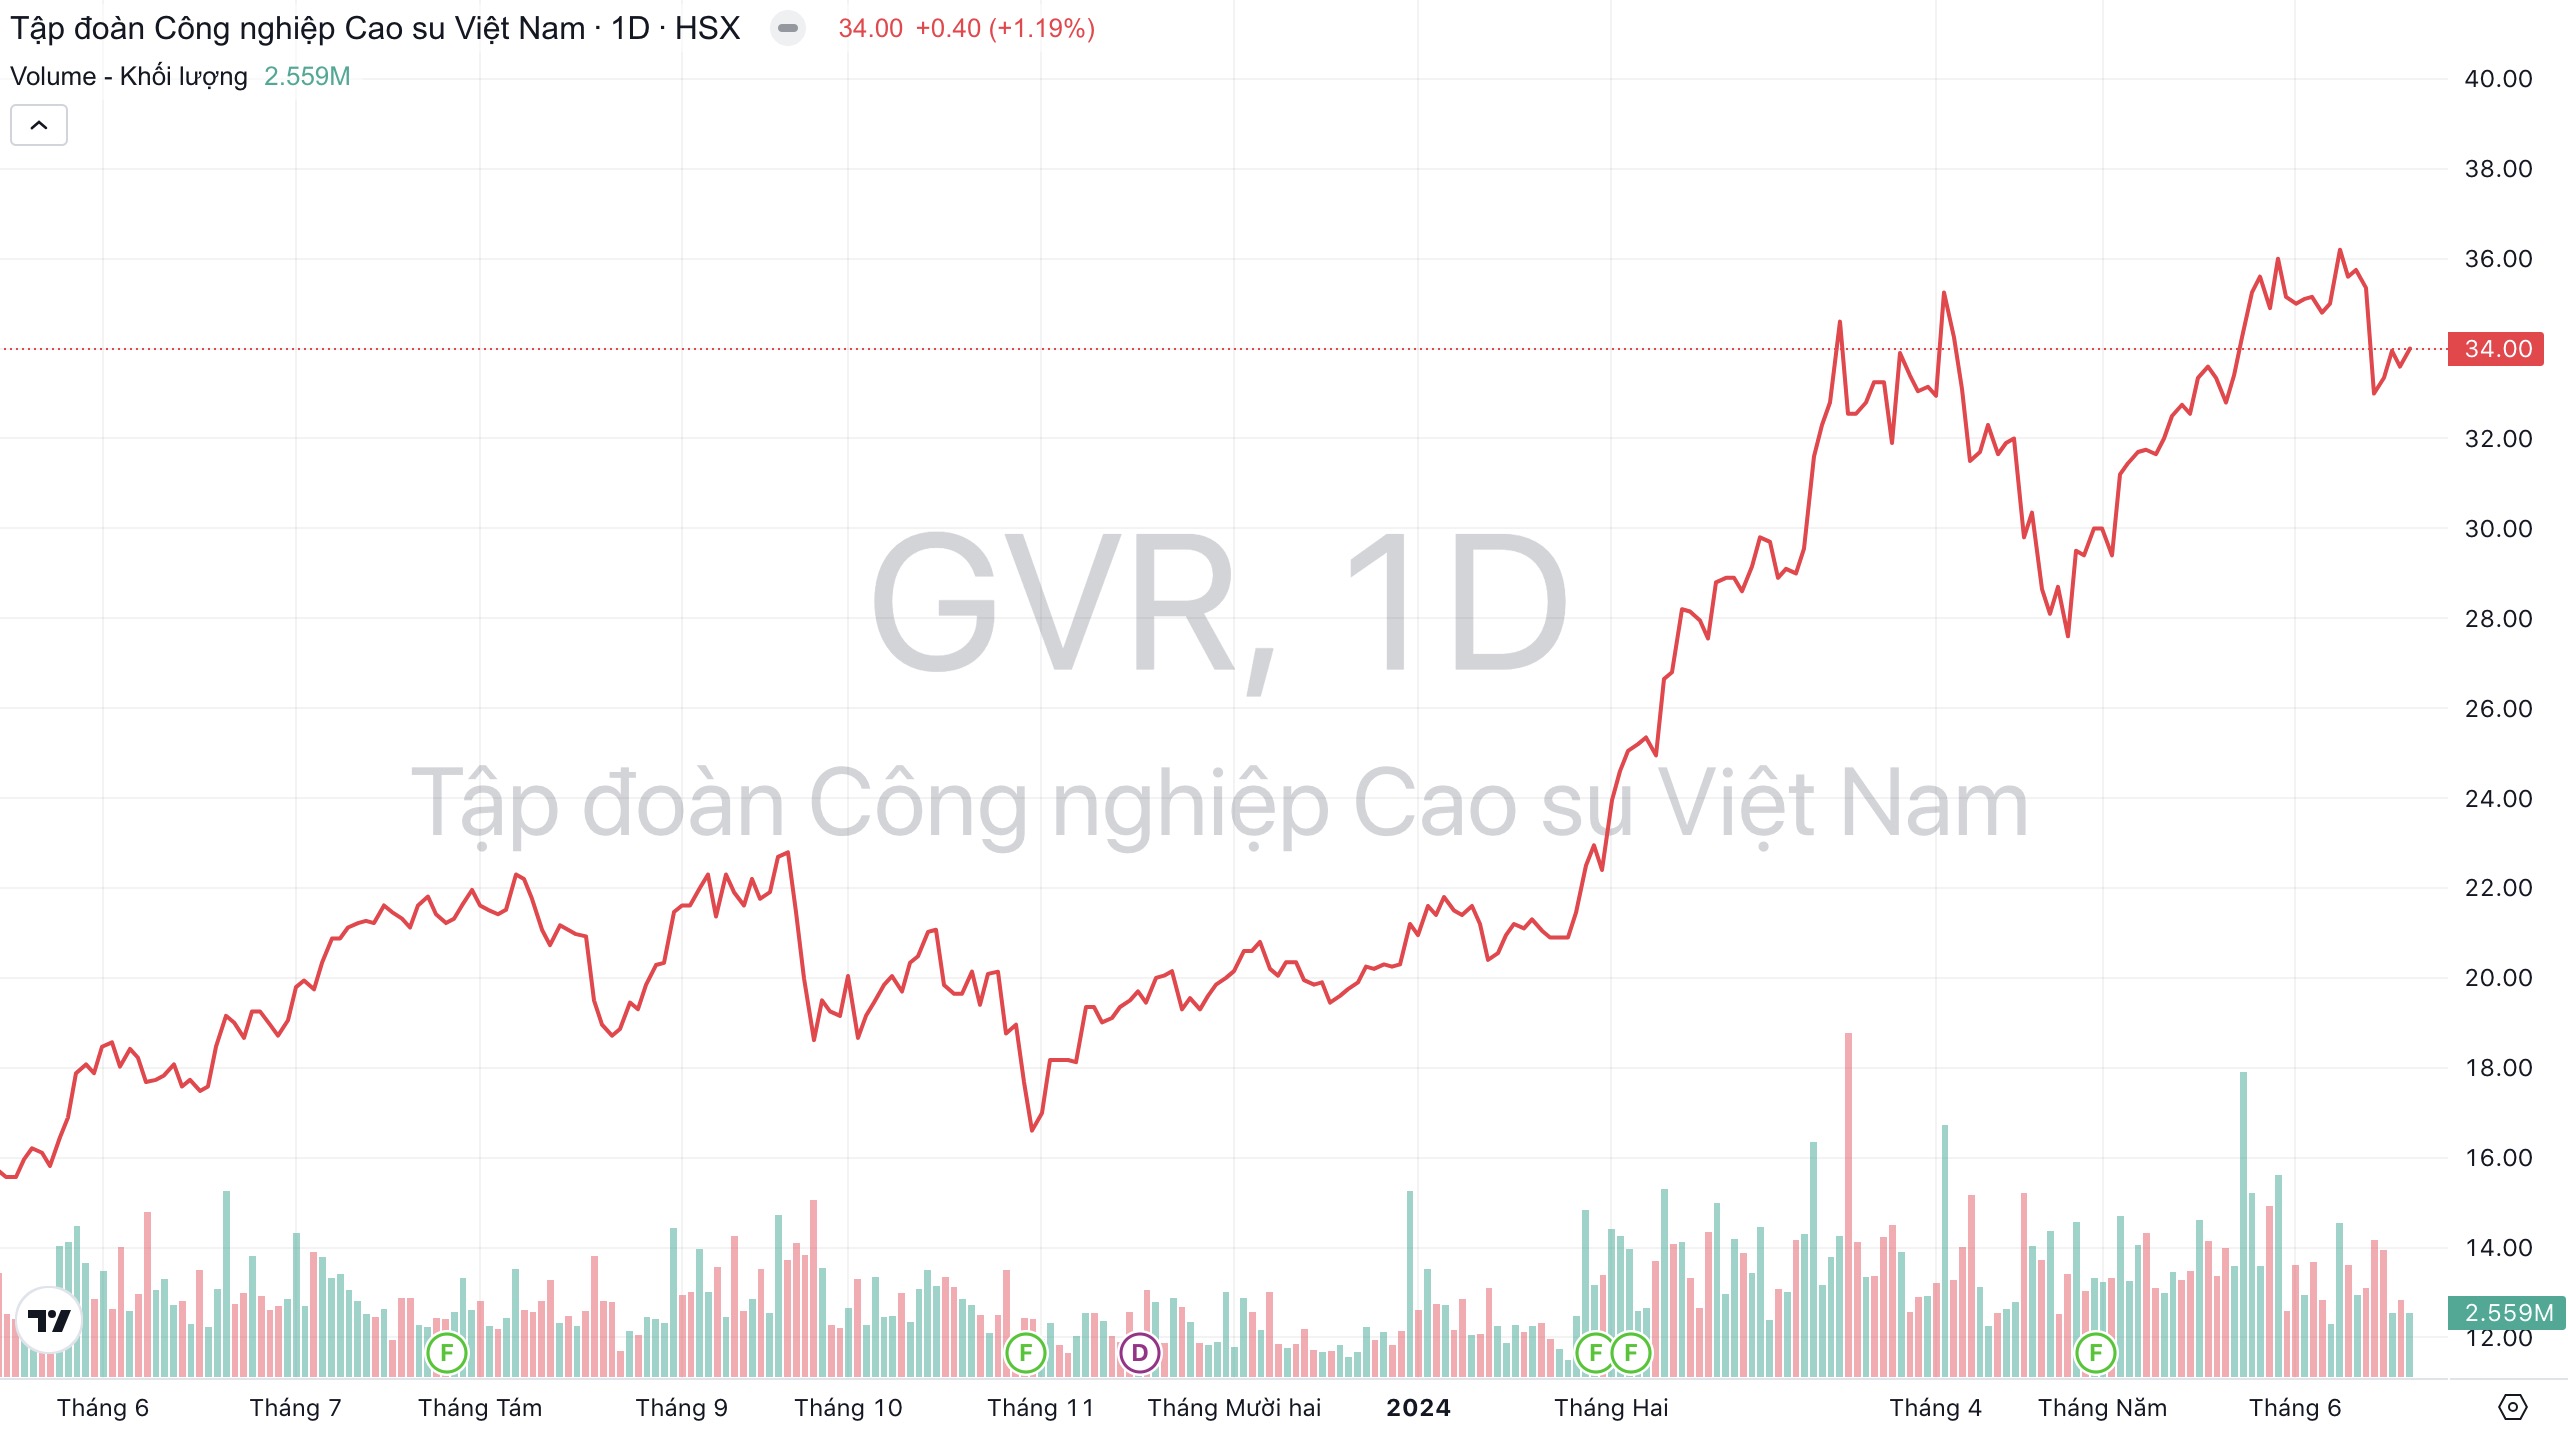 Giá cổ phiếu GVR Cao su Việt Nam